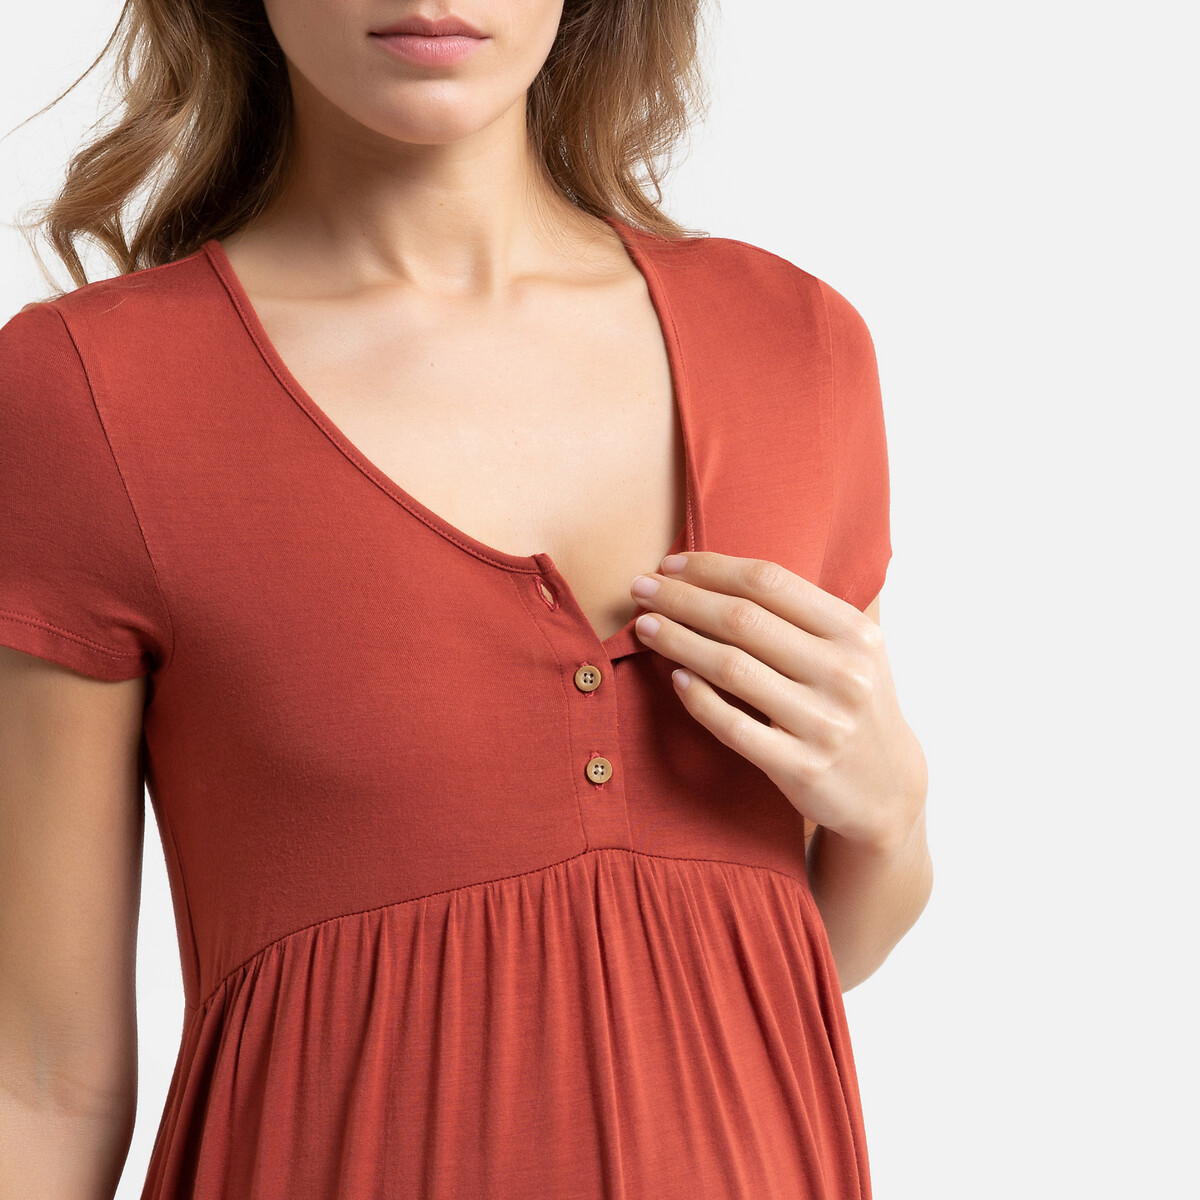 Ночная LaRedoute Рубашка для периода беременности и грудного вскармливания 50/52 (FR) - 56/58 (RUS) каштановый, размер 50/52 (FR) - 56/58 (RUS) Рубашка для периода беременности и грудного вскармливания 50/52 (FR) - 56/58 (RUS) каштановый - фото 2